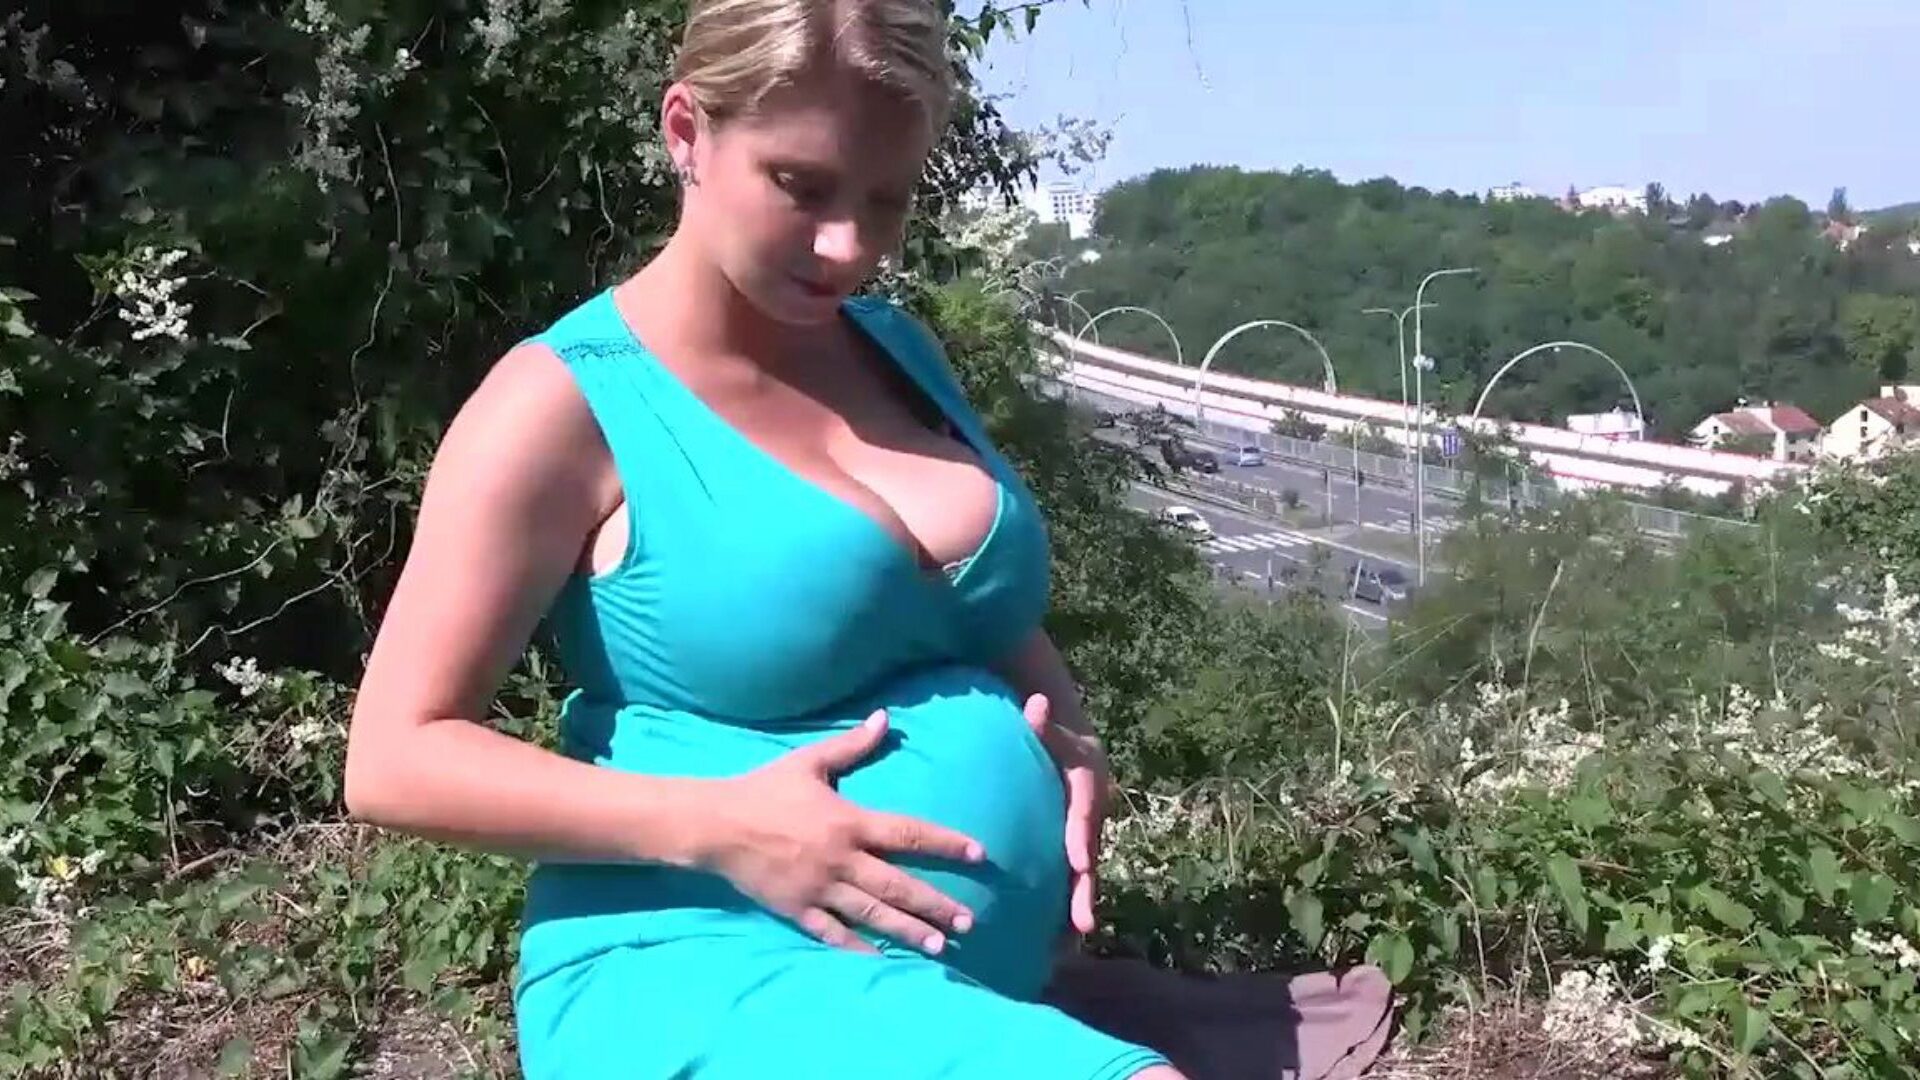 katerina hartlova sale para disfrutar un poco de su cuerpo embarazada